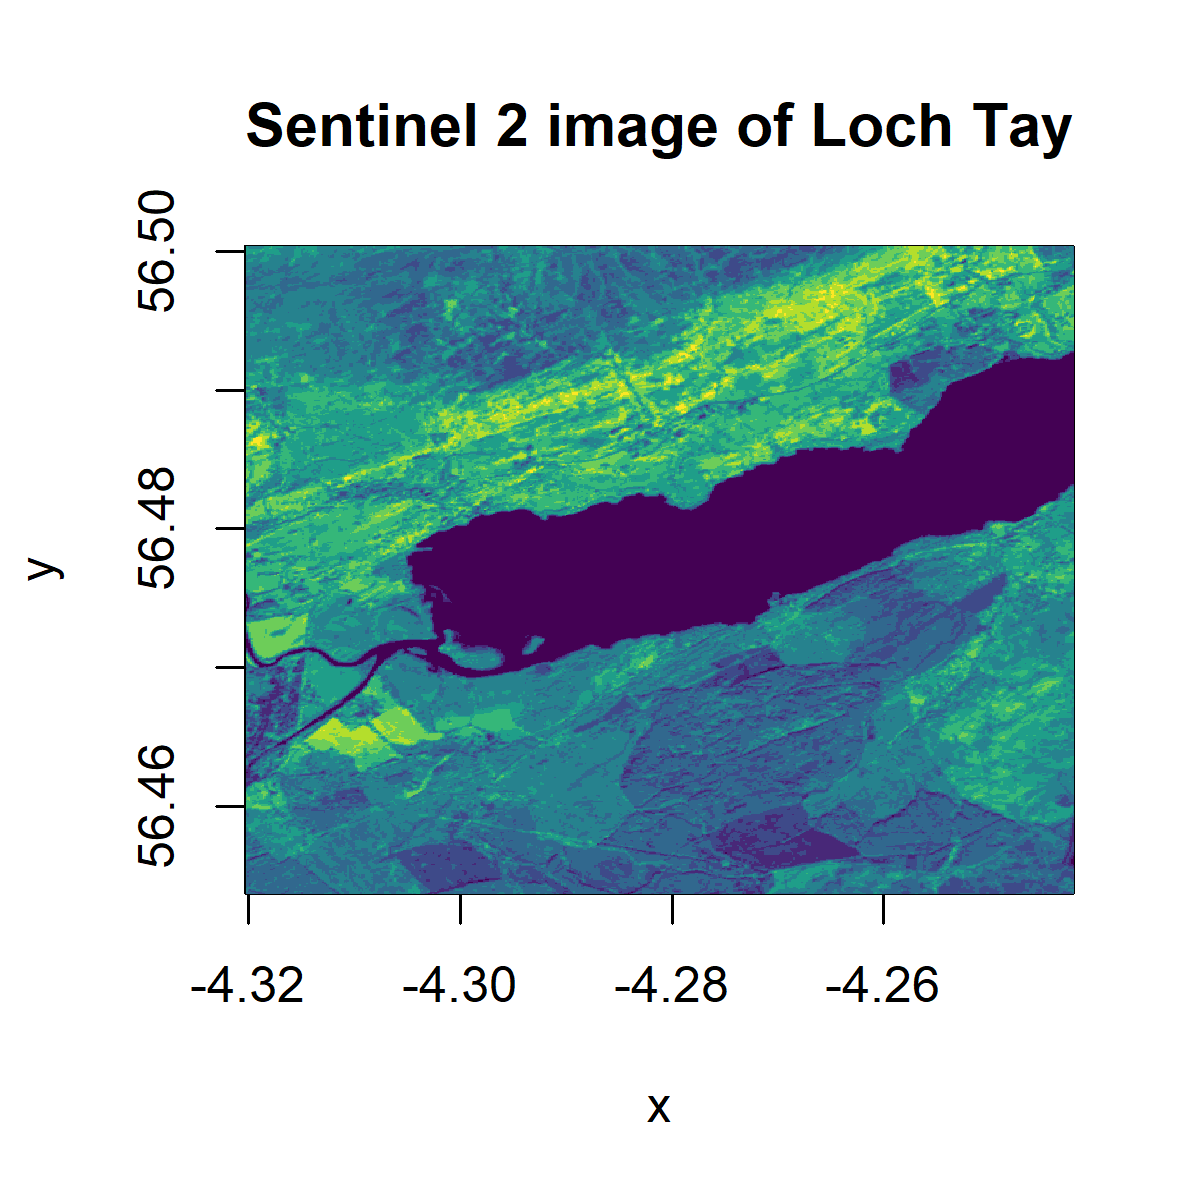 Viridis raster plot of Loch Tay